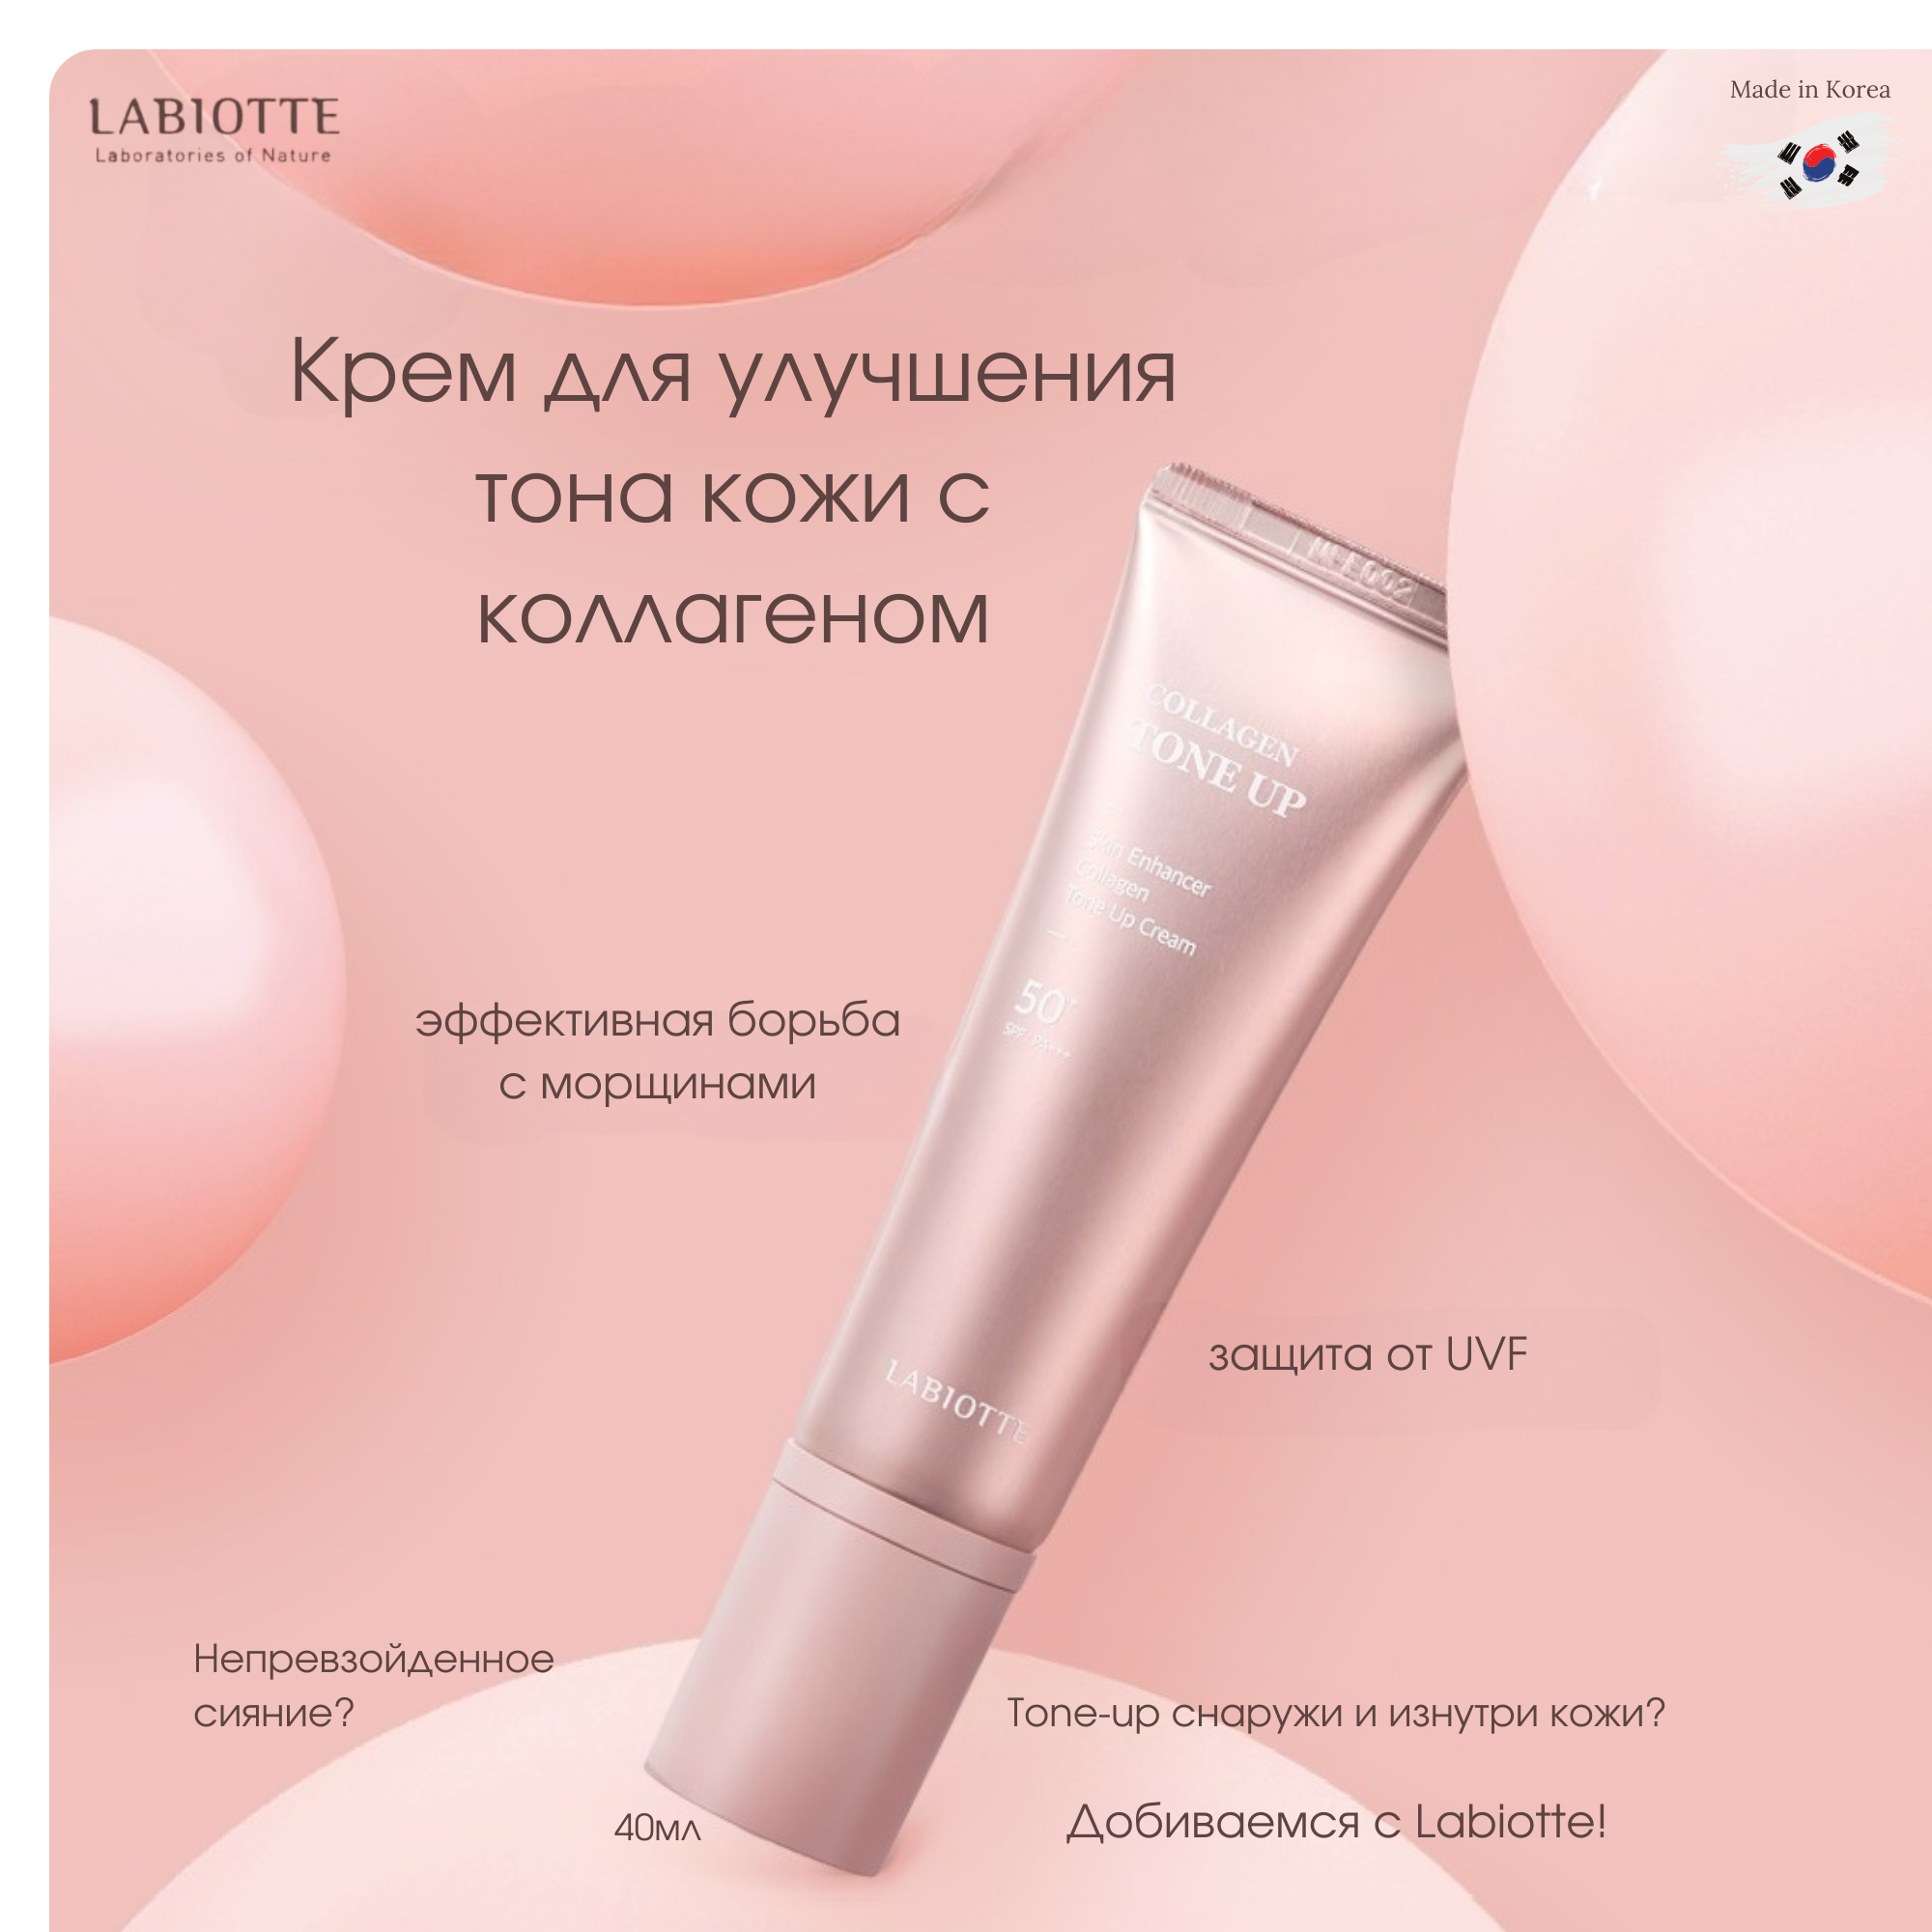 Крем для лица Labiotte для улучшения тона кожи с коллагеном 40мл shiseido ароматический крем для улучшения упругости кожи бюста body creator